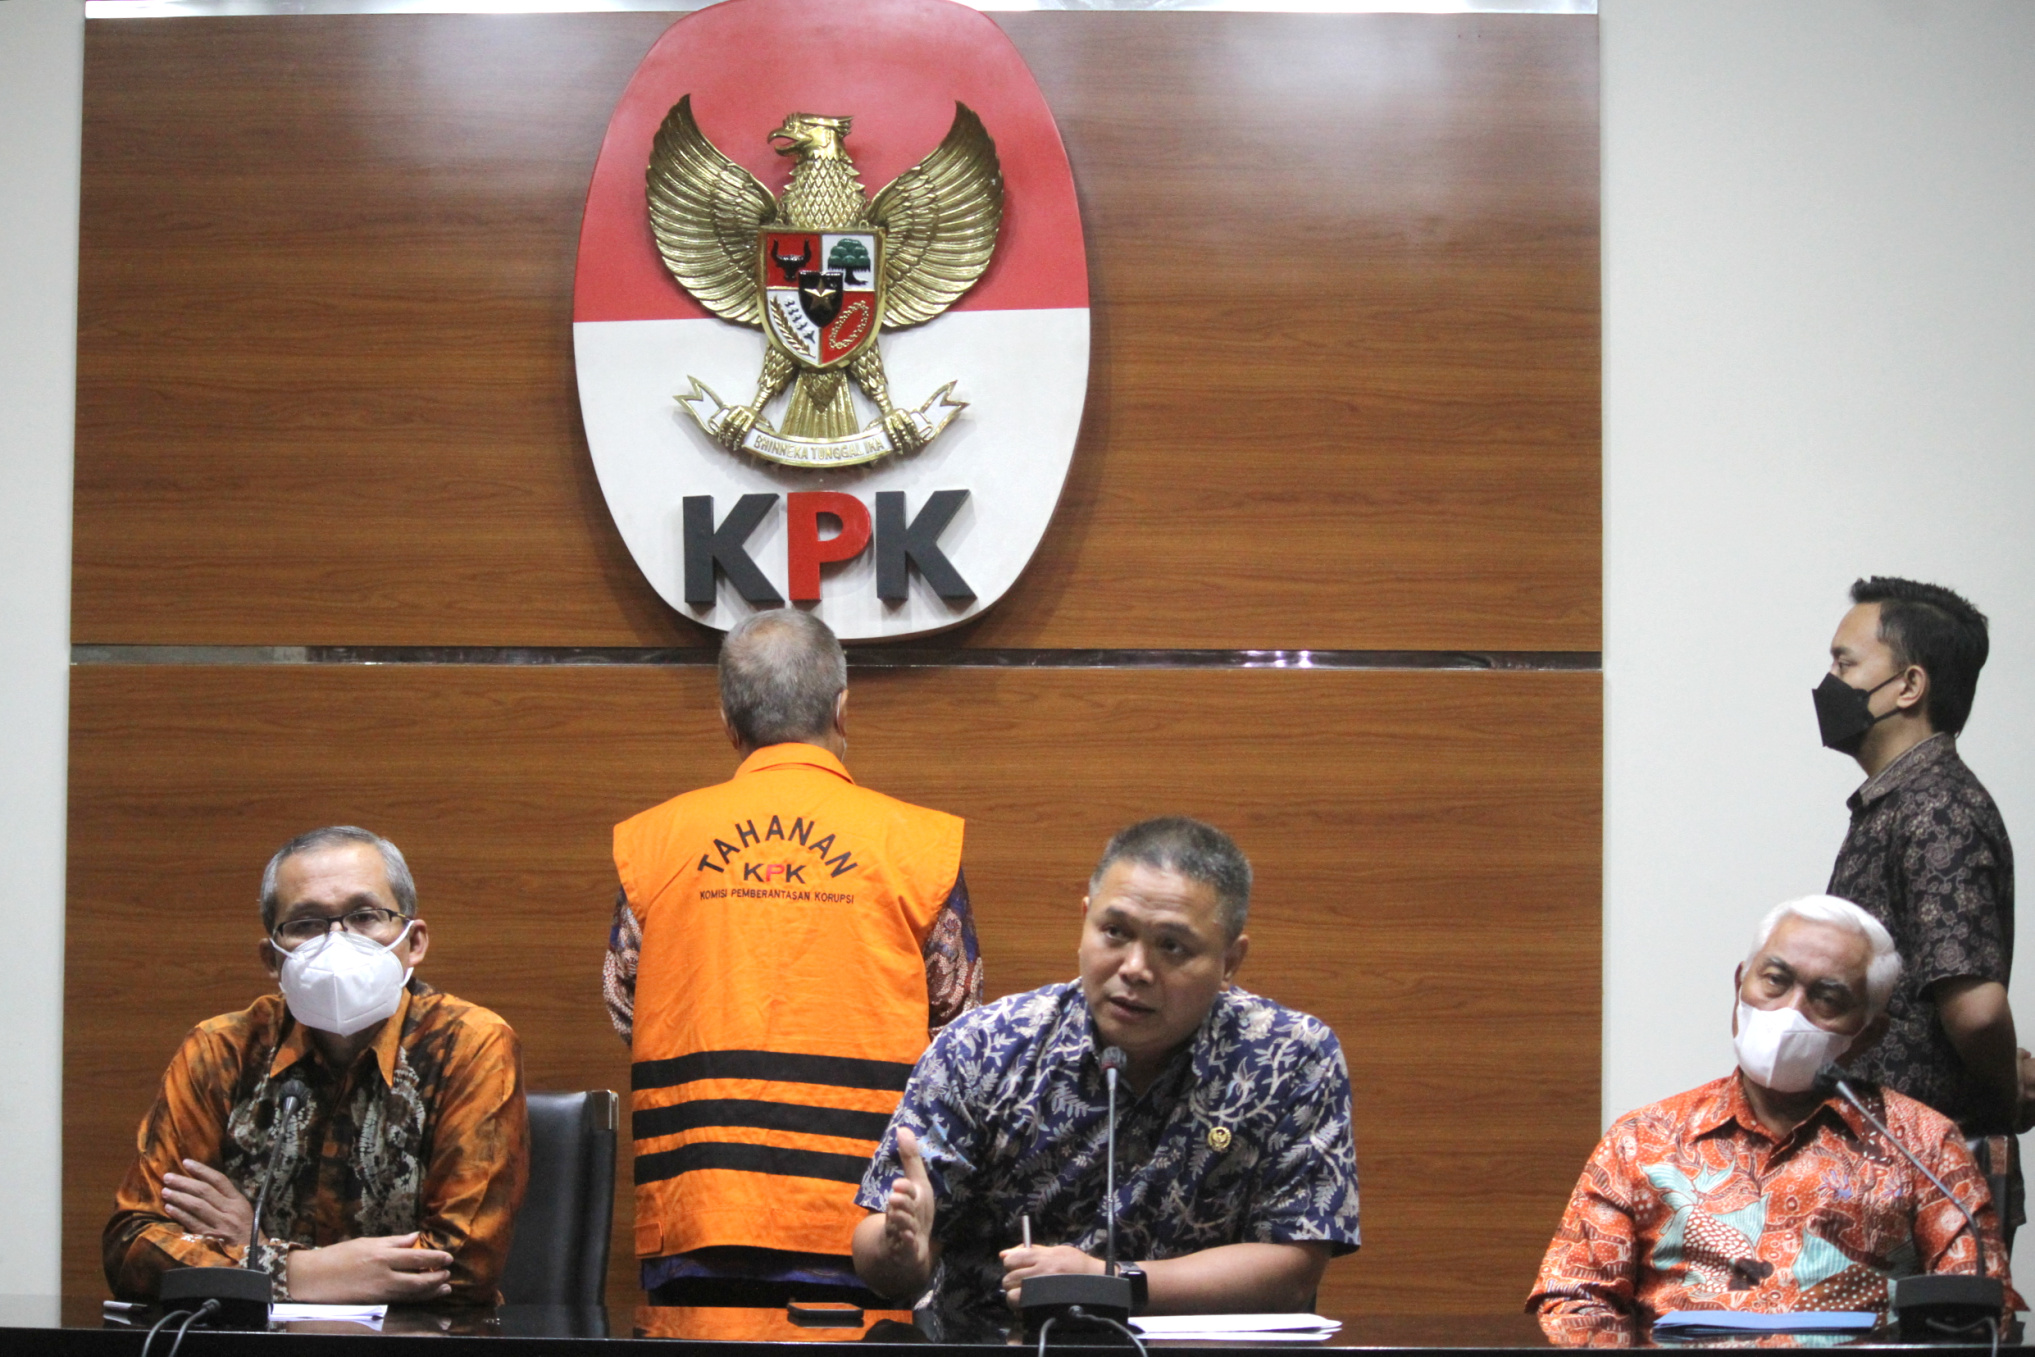 Hakim Agung Sudrajad Diyamti resmi ditahan KPK setelah menyerahkan diri (Ashar/SinPo.id)